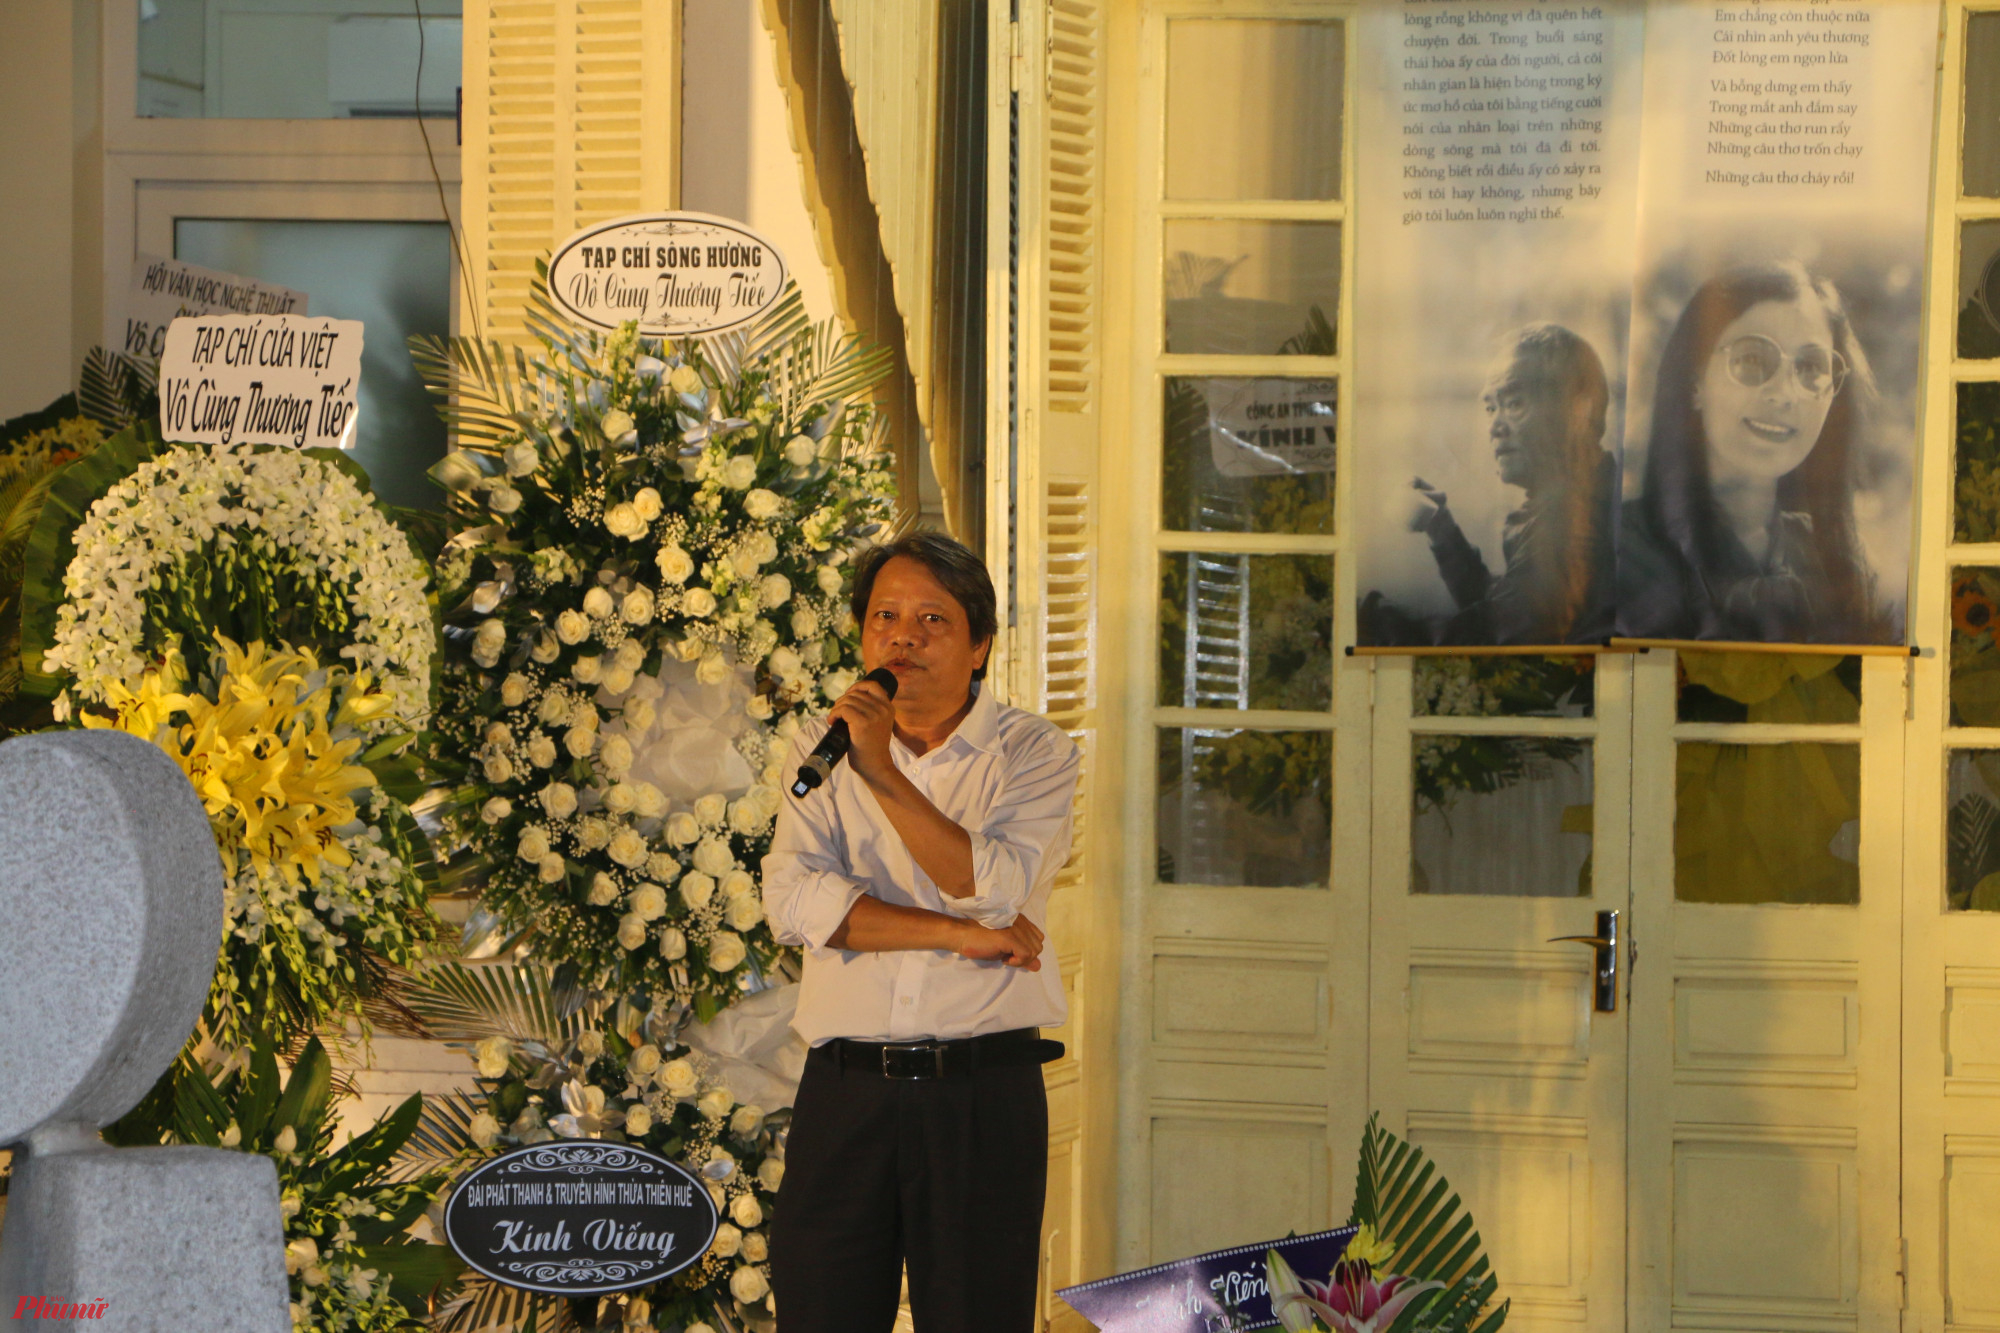 Nhà văn Hồ Đăng Thanh Ngọc chia sẻ cảm xúc trong đêm đêm thơ nhạc tưởng nhớ vợ chồng nhà văn Hoàng Phủ Ngọc Tường